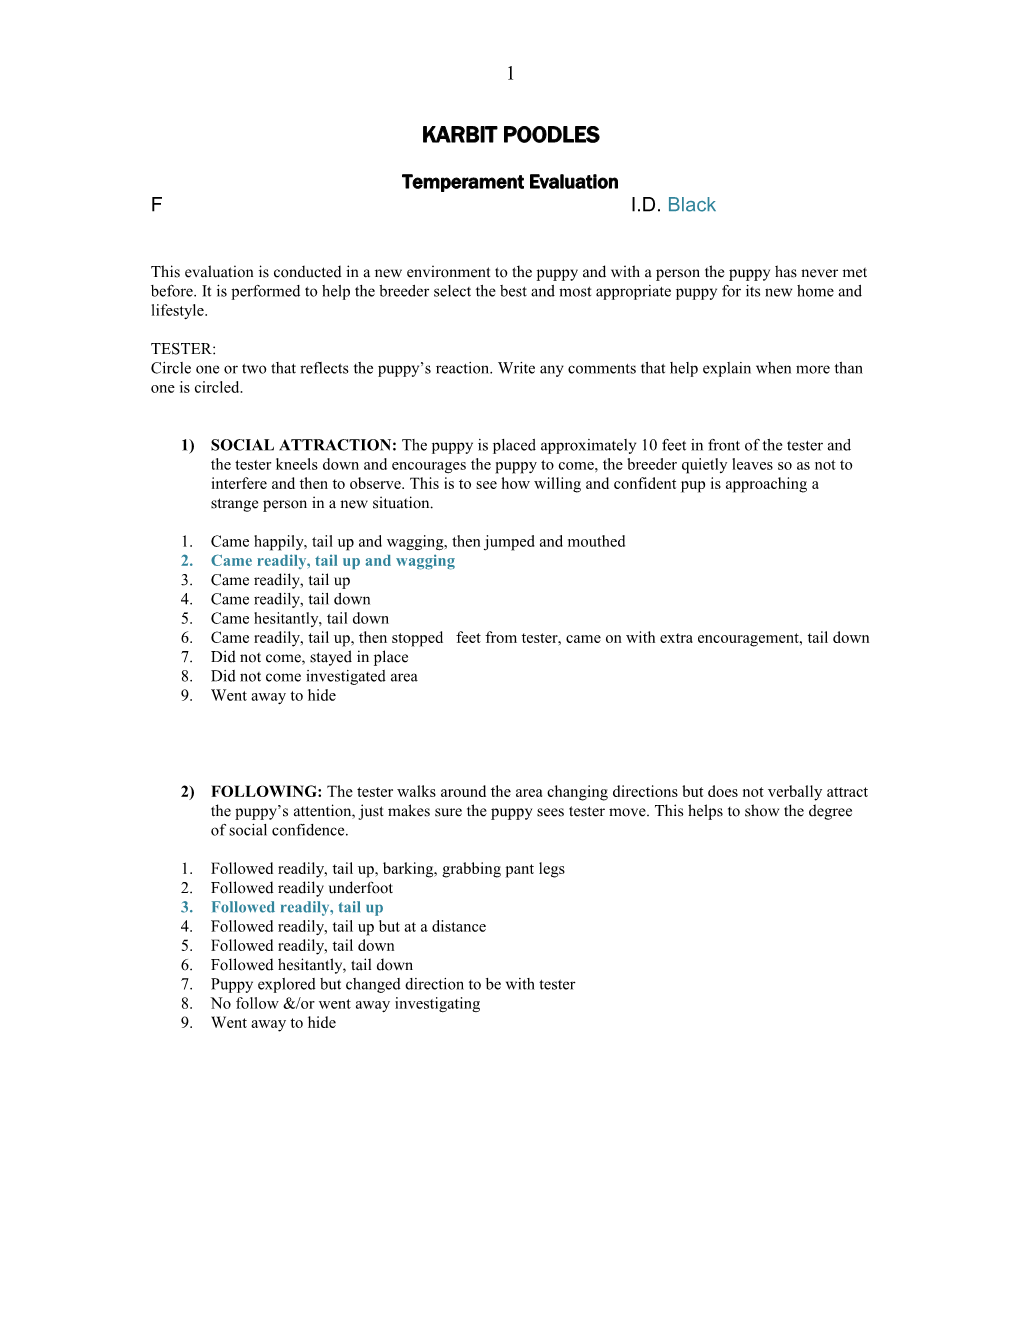 Temperament Evaluation